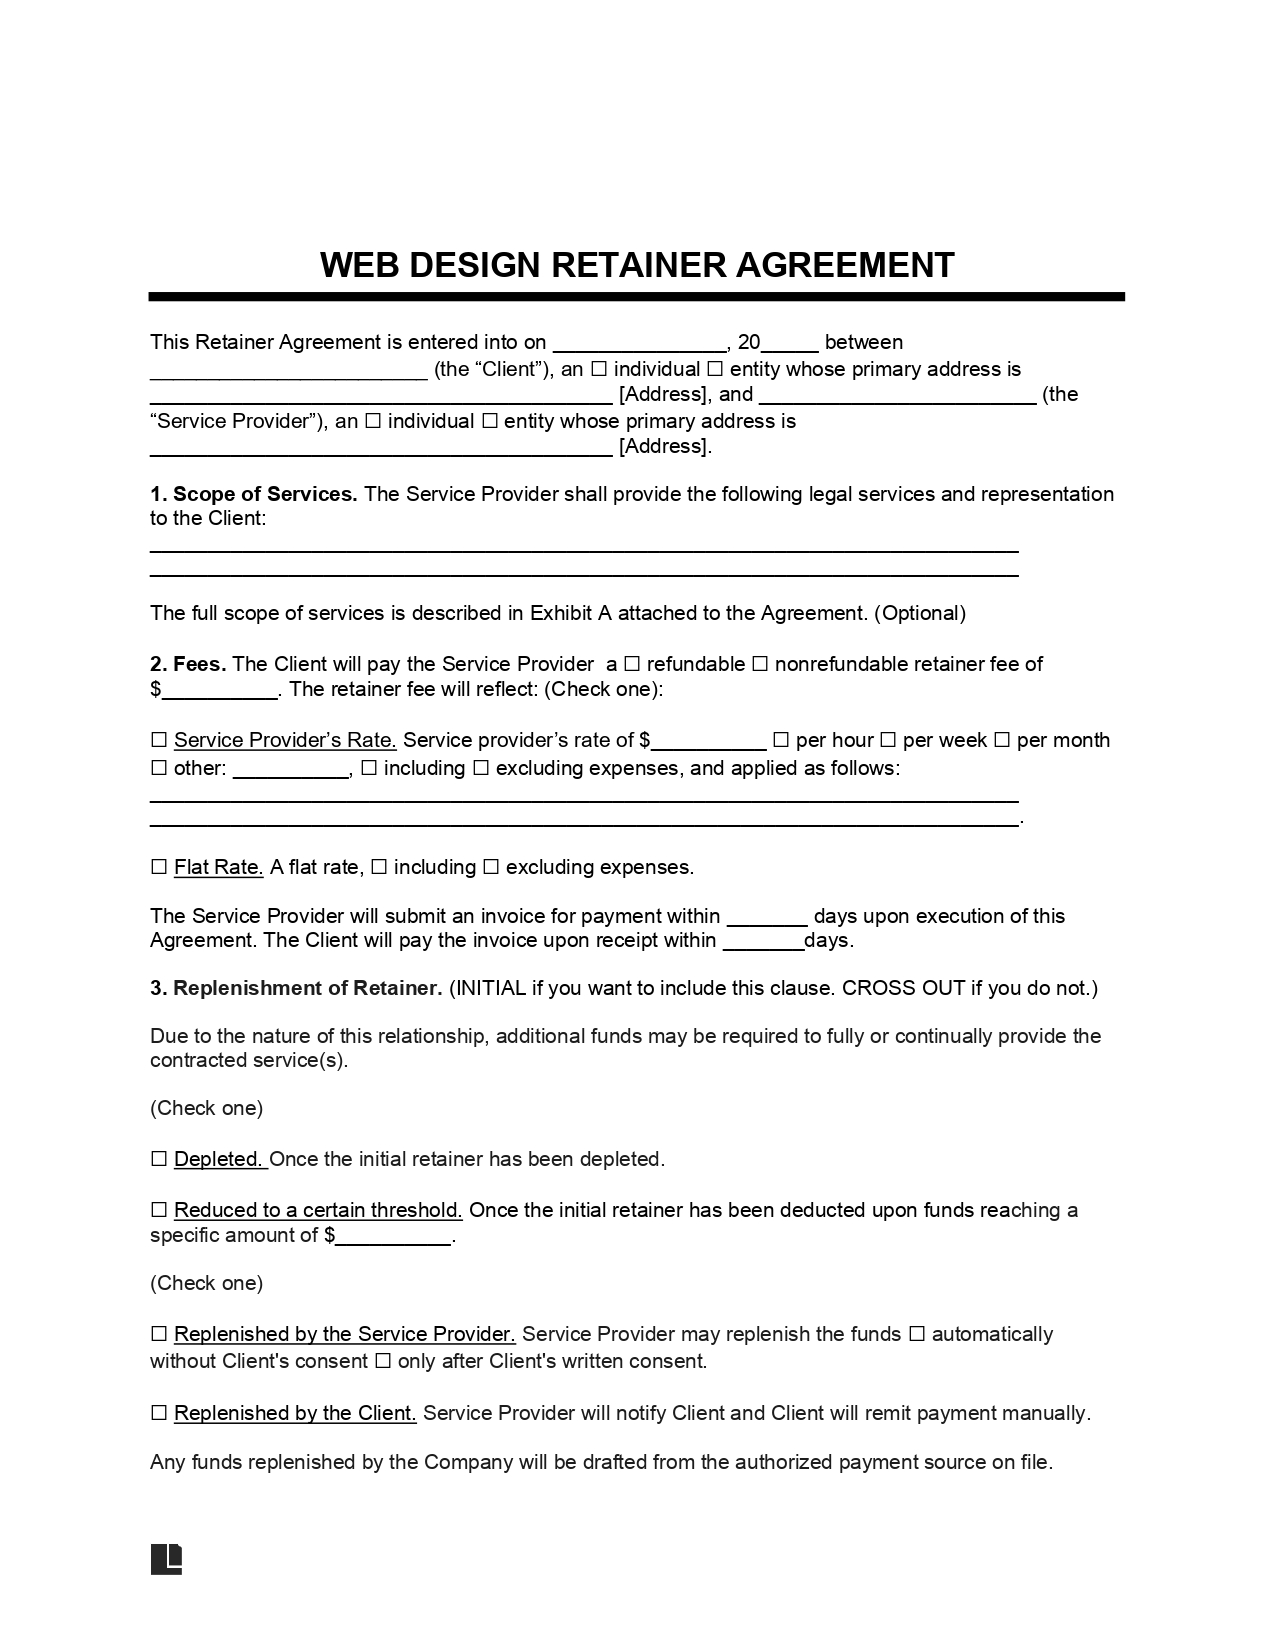 Web Design Retainer Agreement